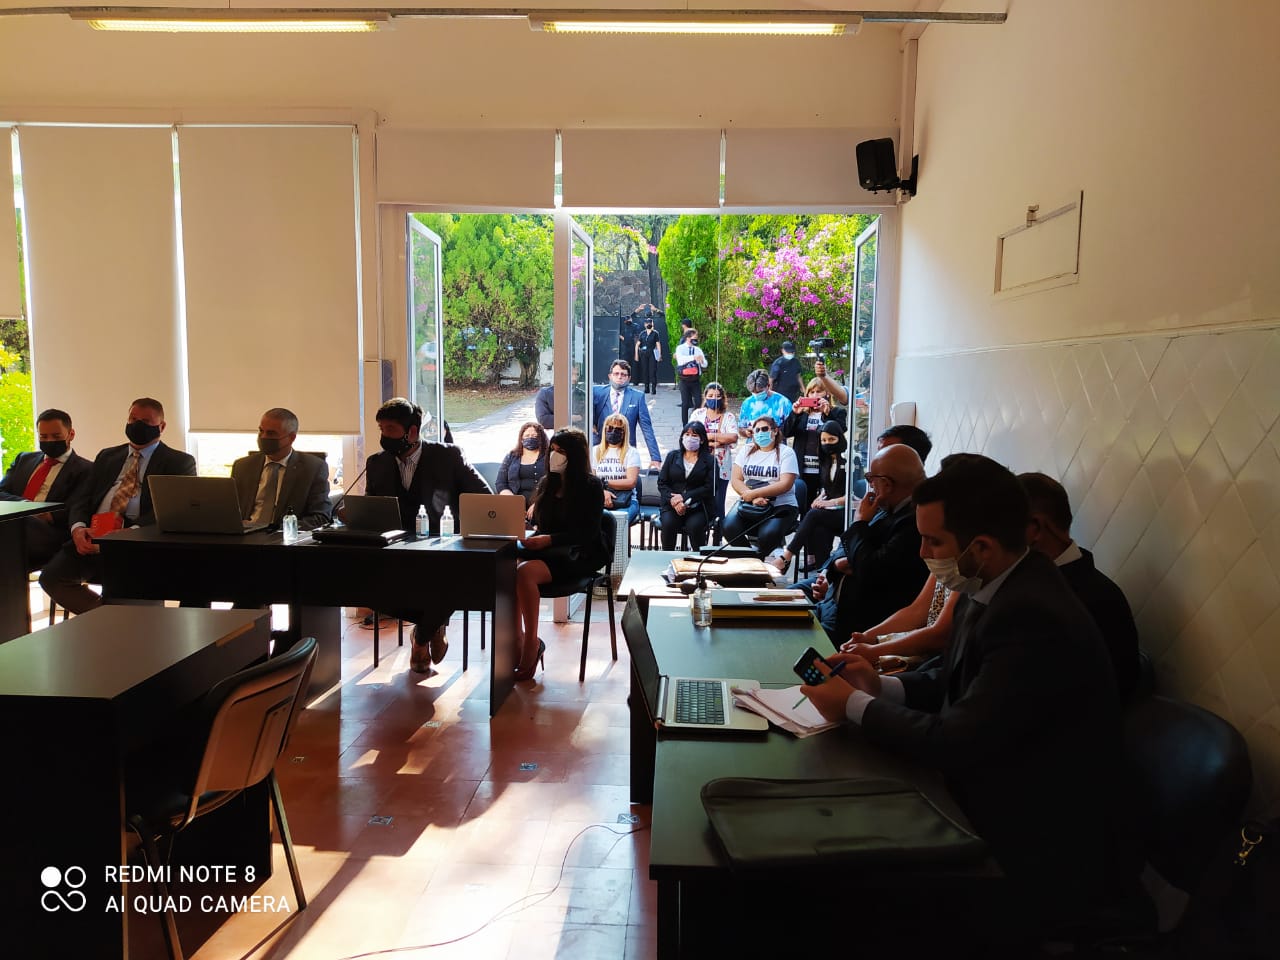 Los familiares de las víctimas y el público siguieron el juicio desde afuera de la sala.  - Fotos: Sebastián Rodríguez / Ministerio Público Fiscal 